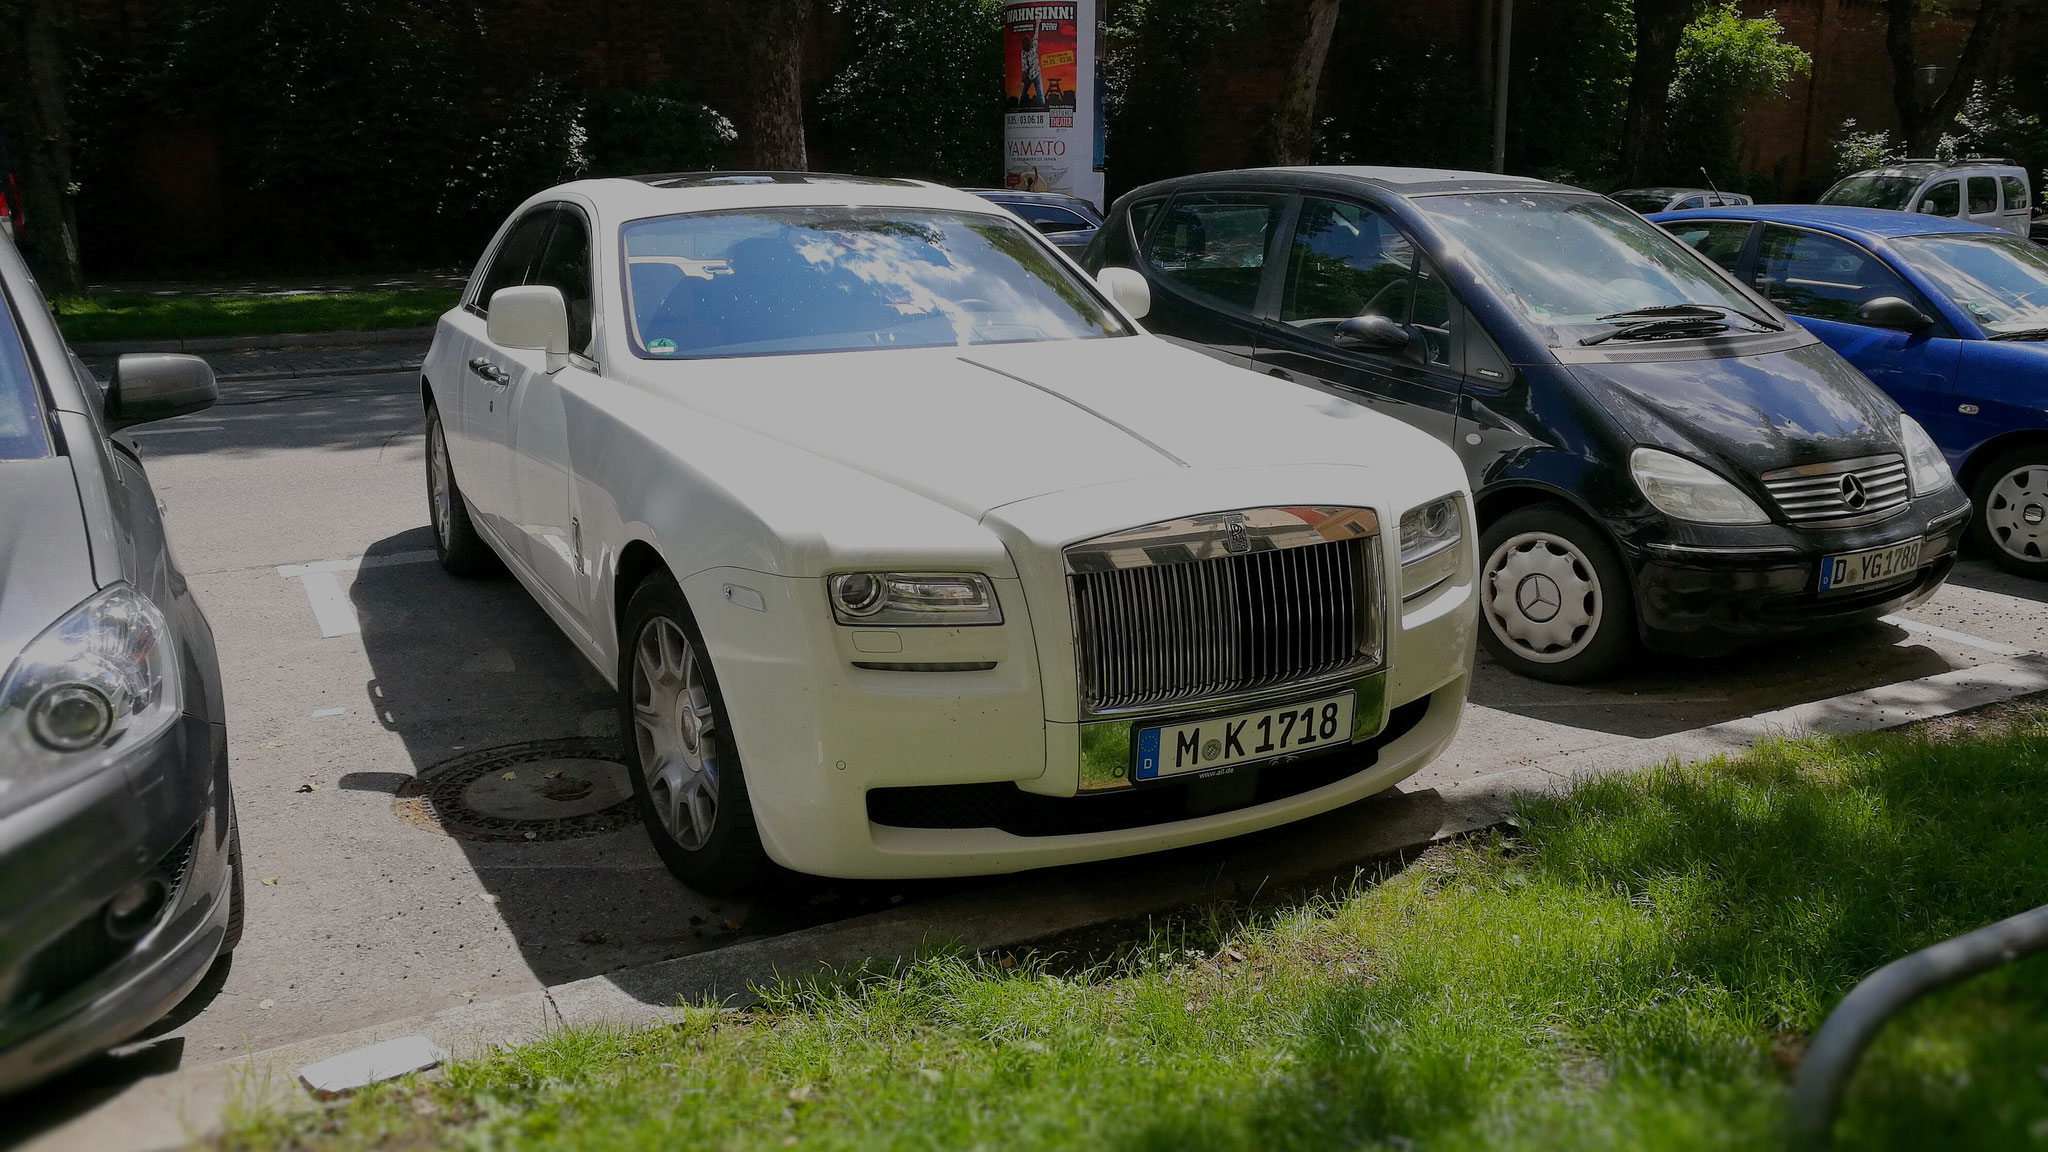 Rolls Royce Ghost - M-K-1718